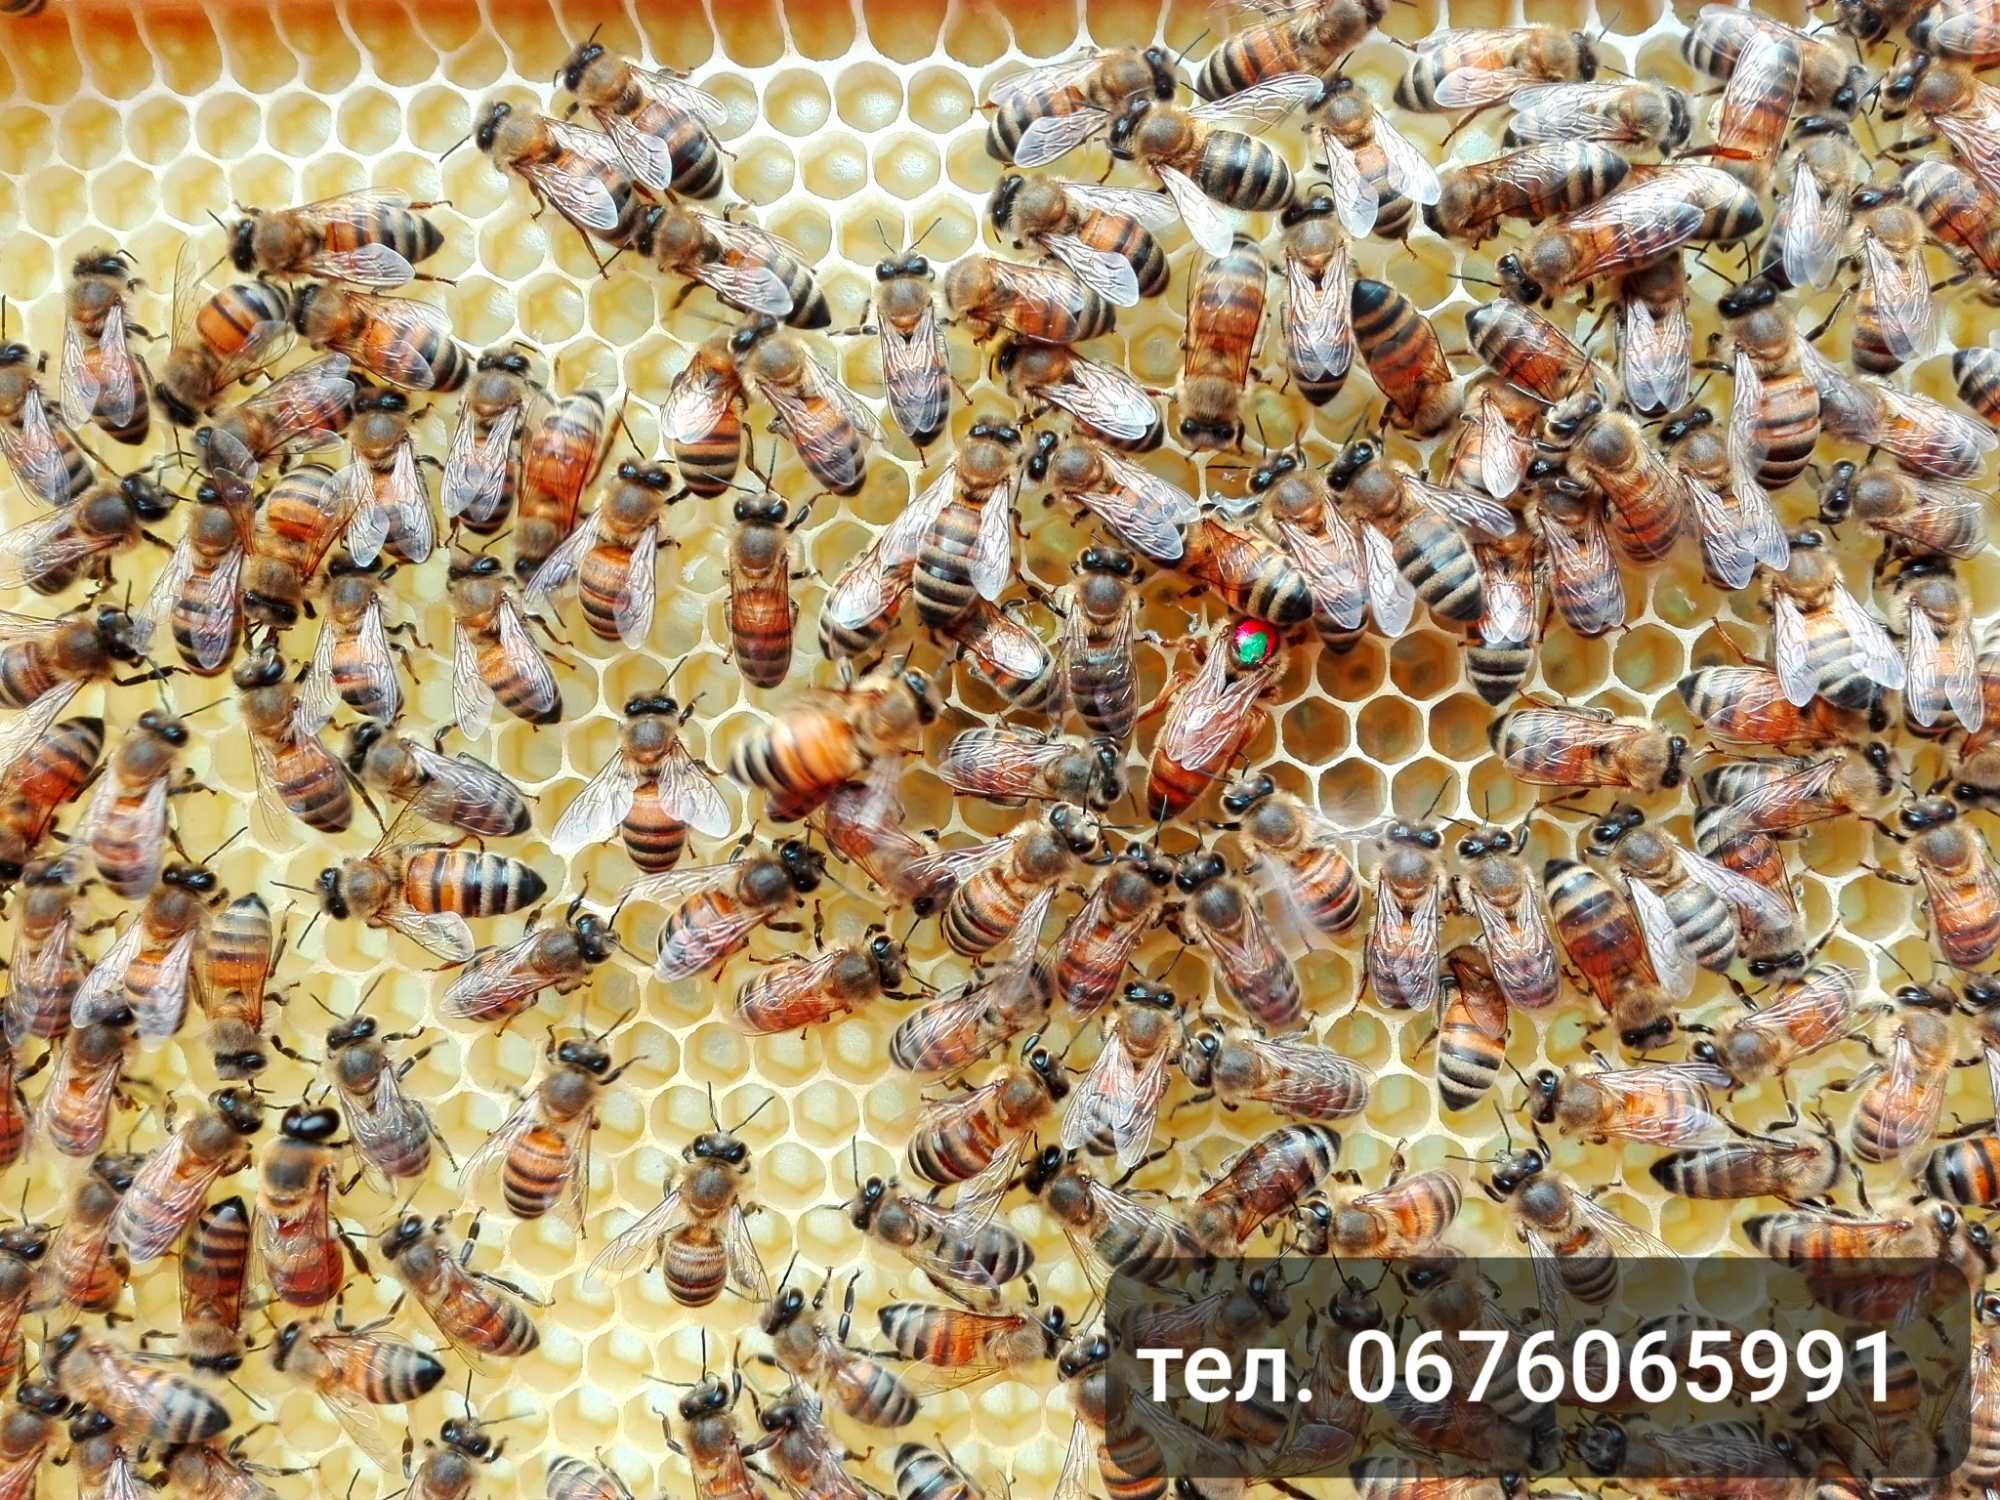 Продам бджолосімї, бджолопакети Бакфаст 1500грн.